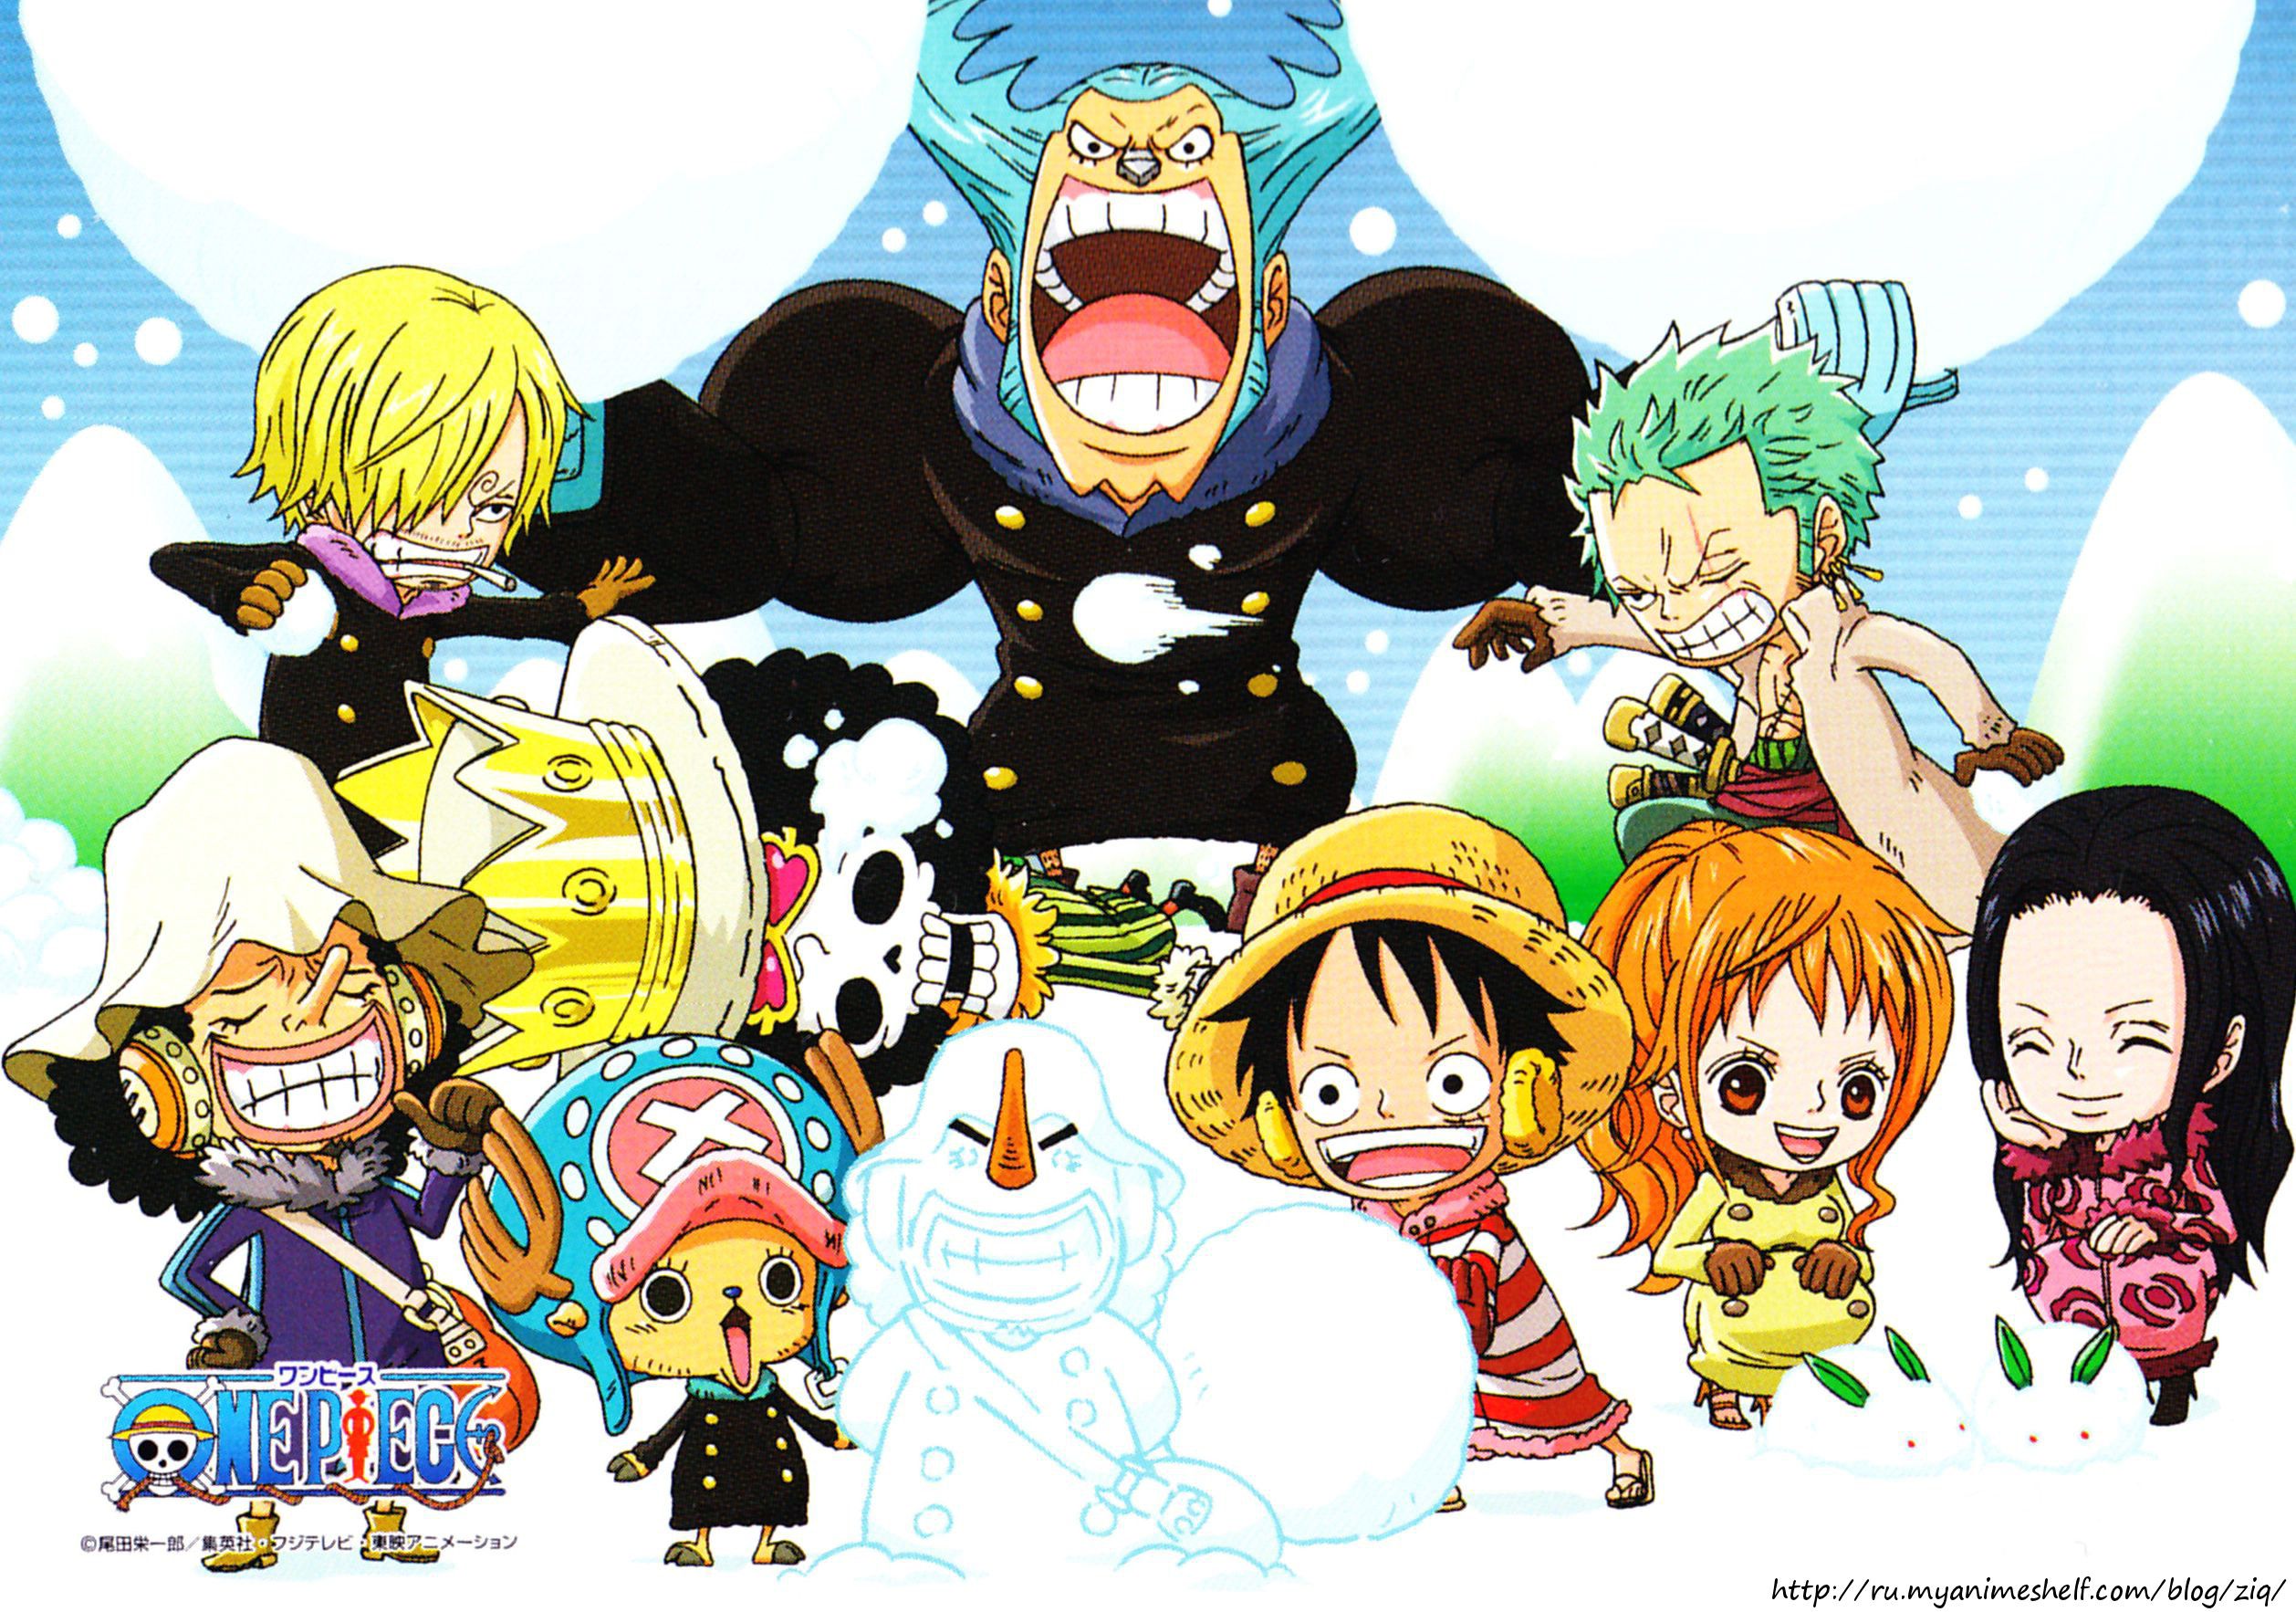 Hải tặc Chibi One Piece hình nền - Hãy đưa bộ sưu tập hình nền One Piece của bạn lên một tầm cao mới với bộ sưu tập dễ thương của các thành viên băng hải tặc Mũ Rơm được tái hiện trong phong cách chibi đáng yêu. Với hình ảnh sống động và màu sắc rực rỡ, bạn sẽ không thể bỏ qua bộ sưu tập này.